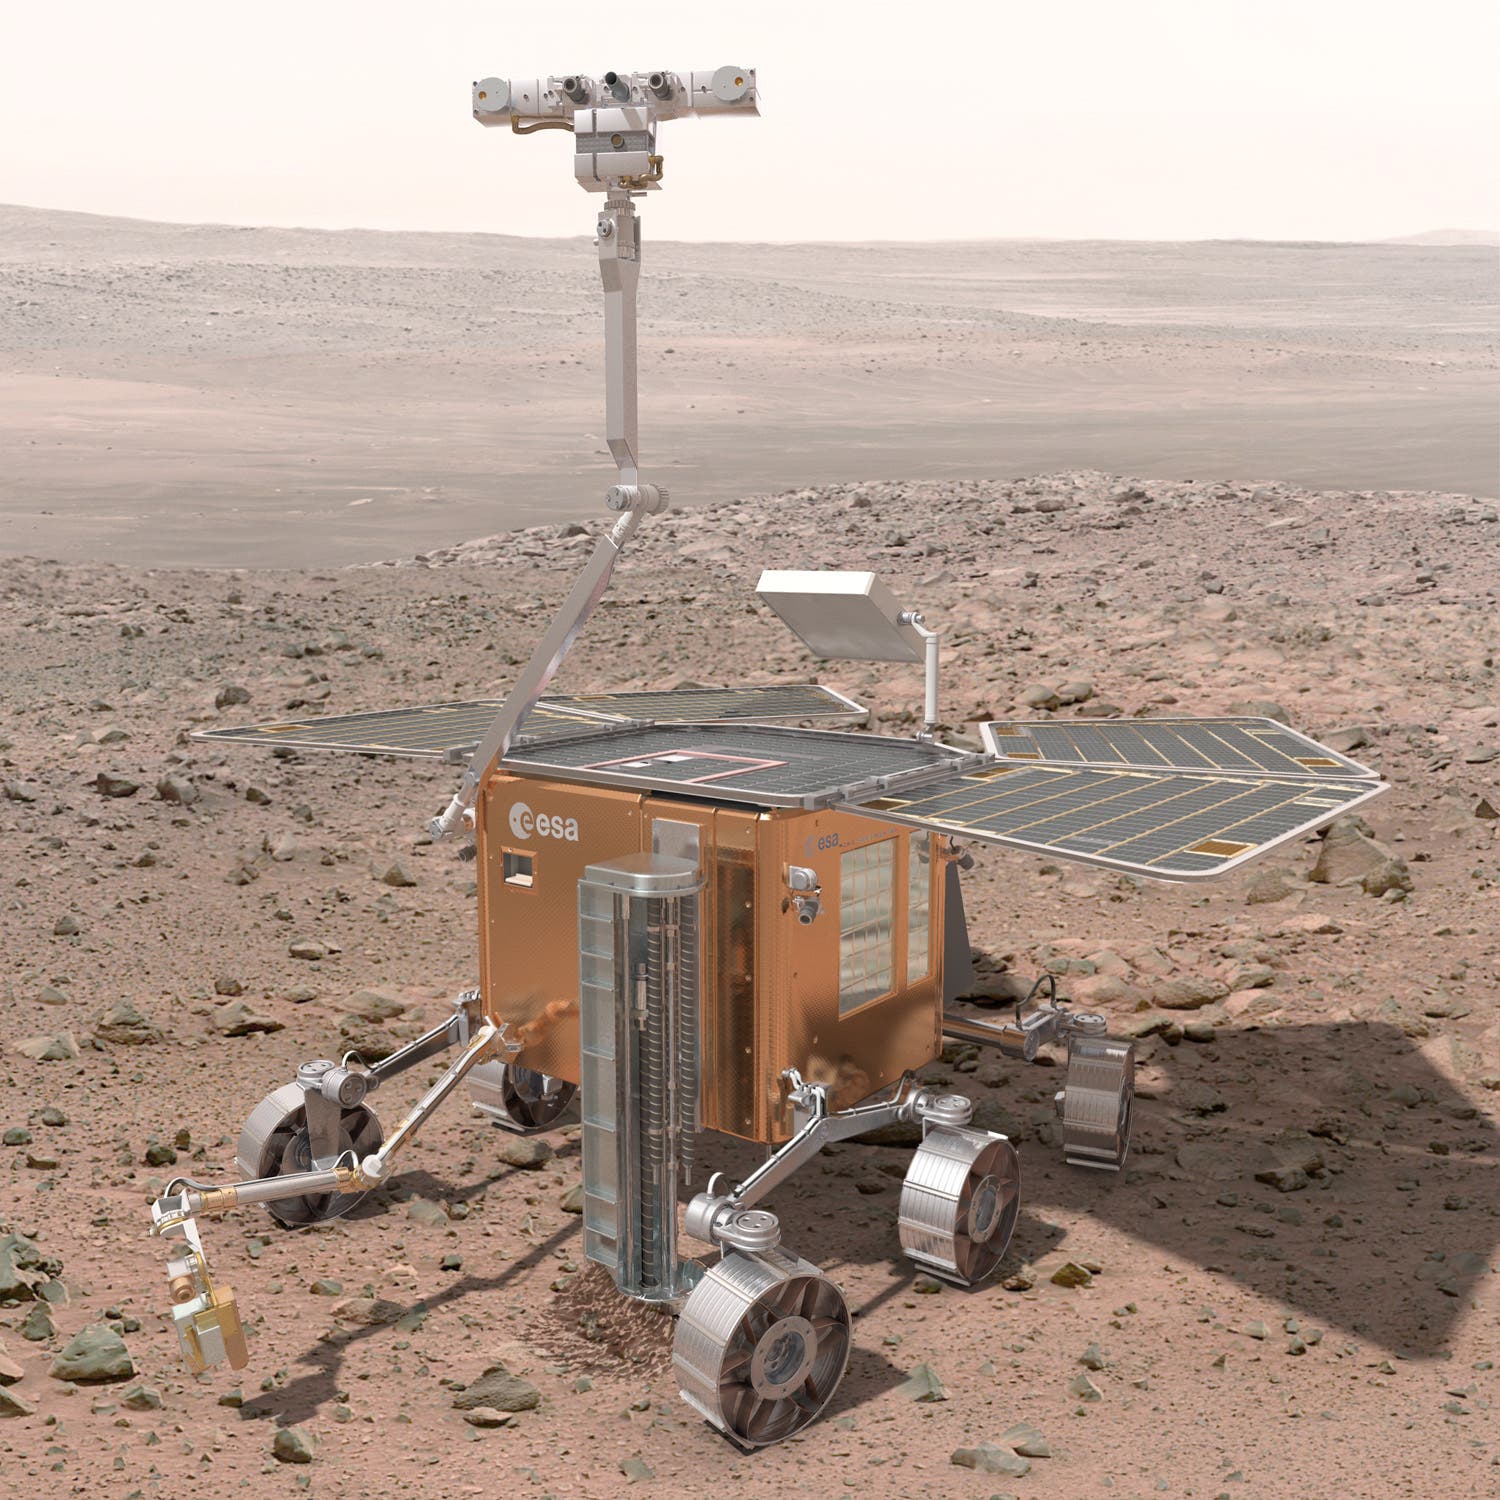 Exomars-Rover: Ein flüchtiger Entwurf?